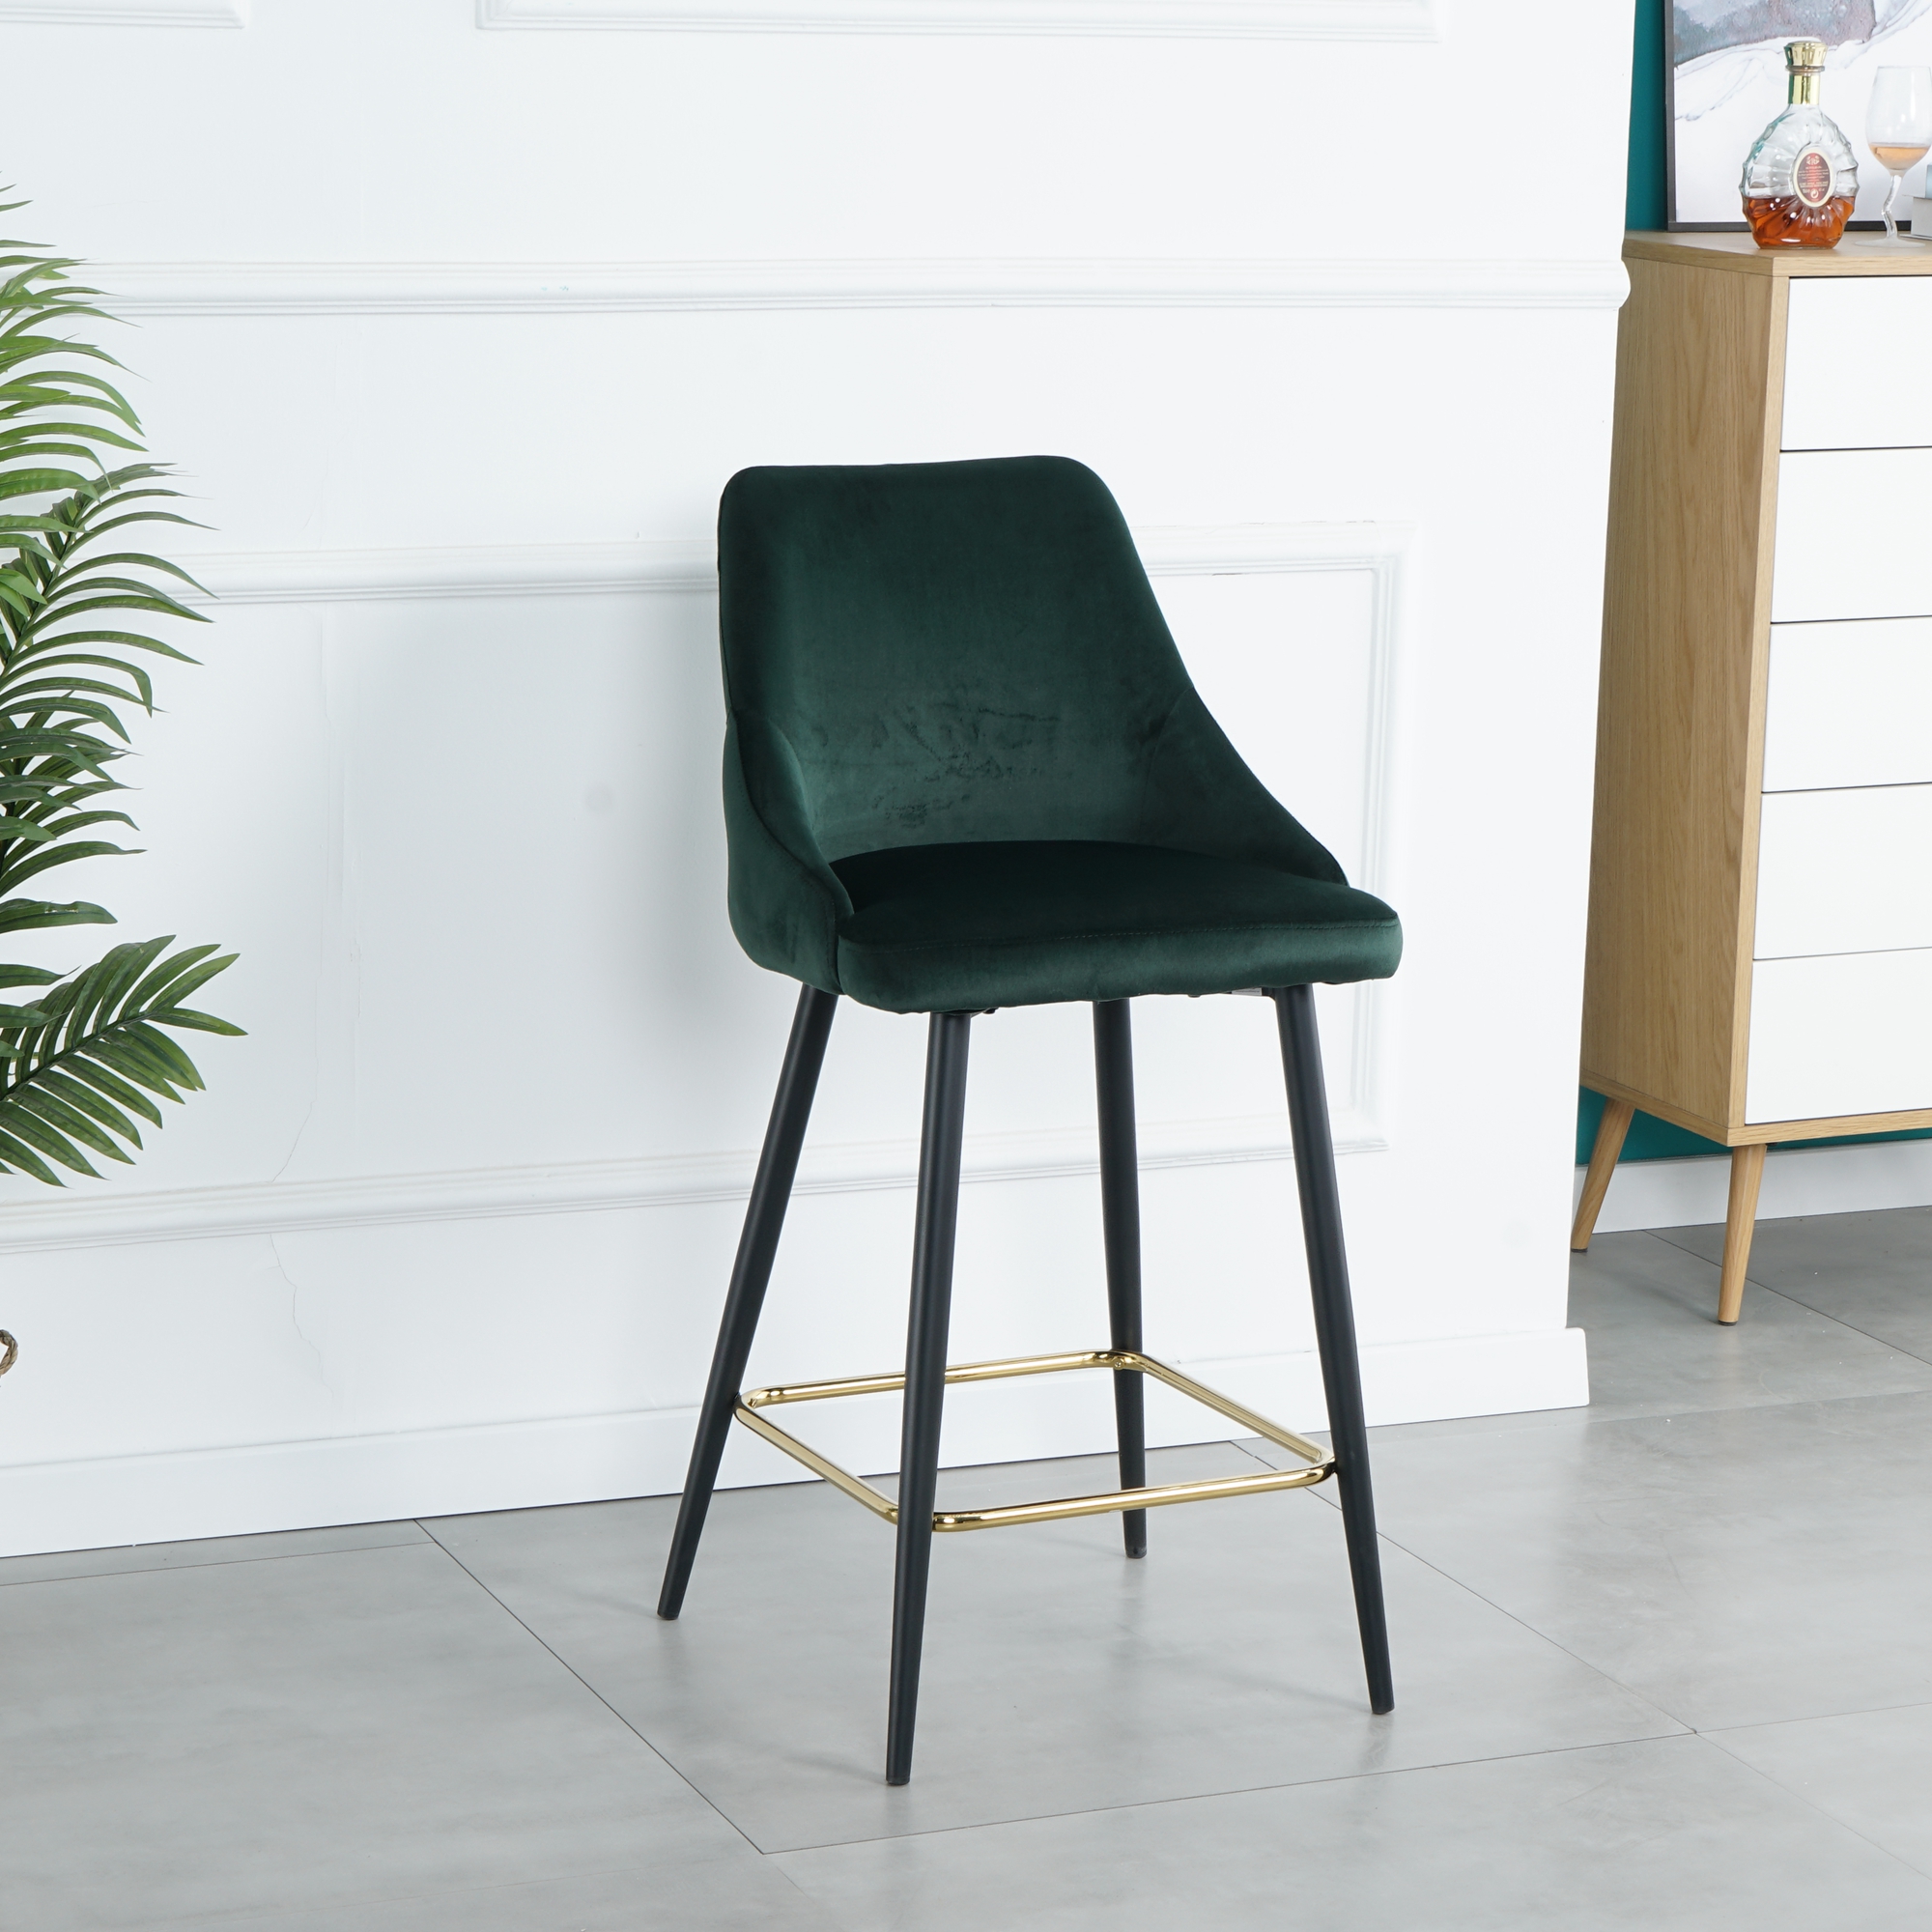 Luxury Modern Green Velvet Upholstered High Bar Stool Chair With Gold Legs(set of 2)-CASAINC